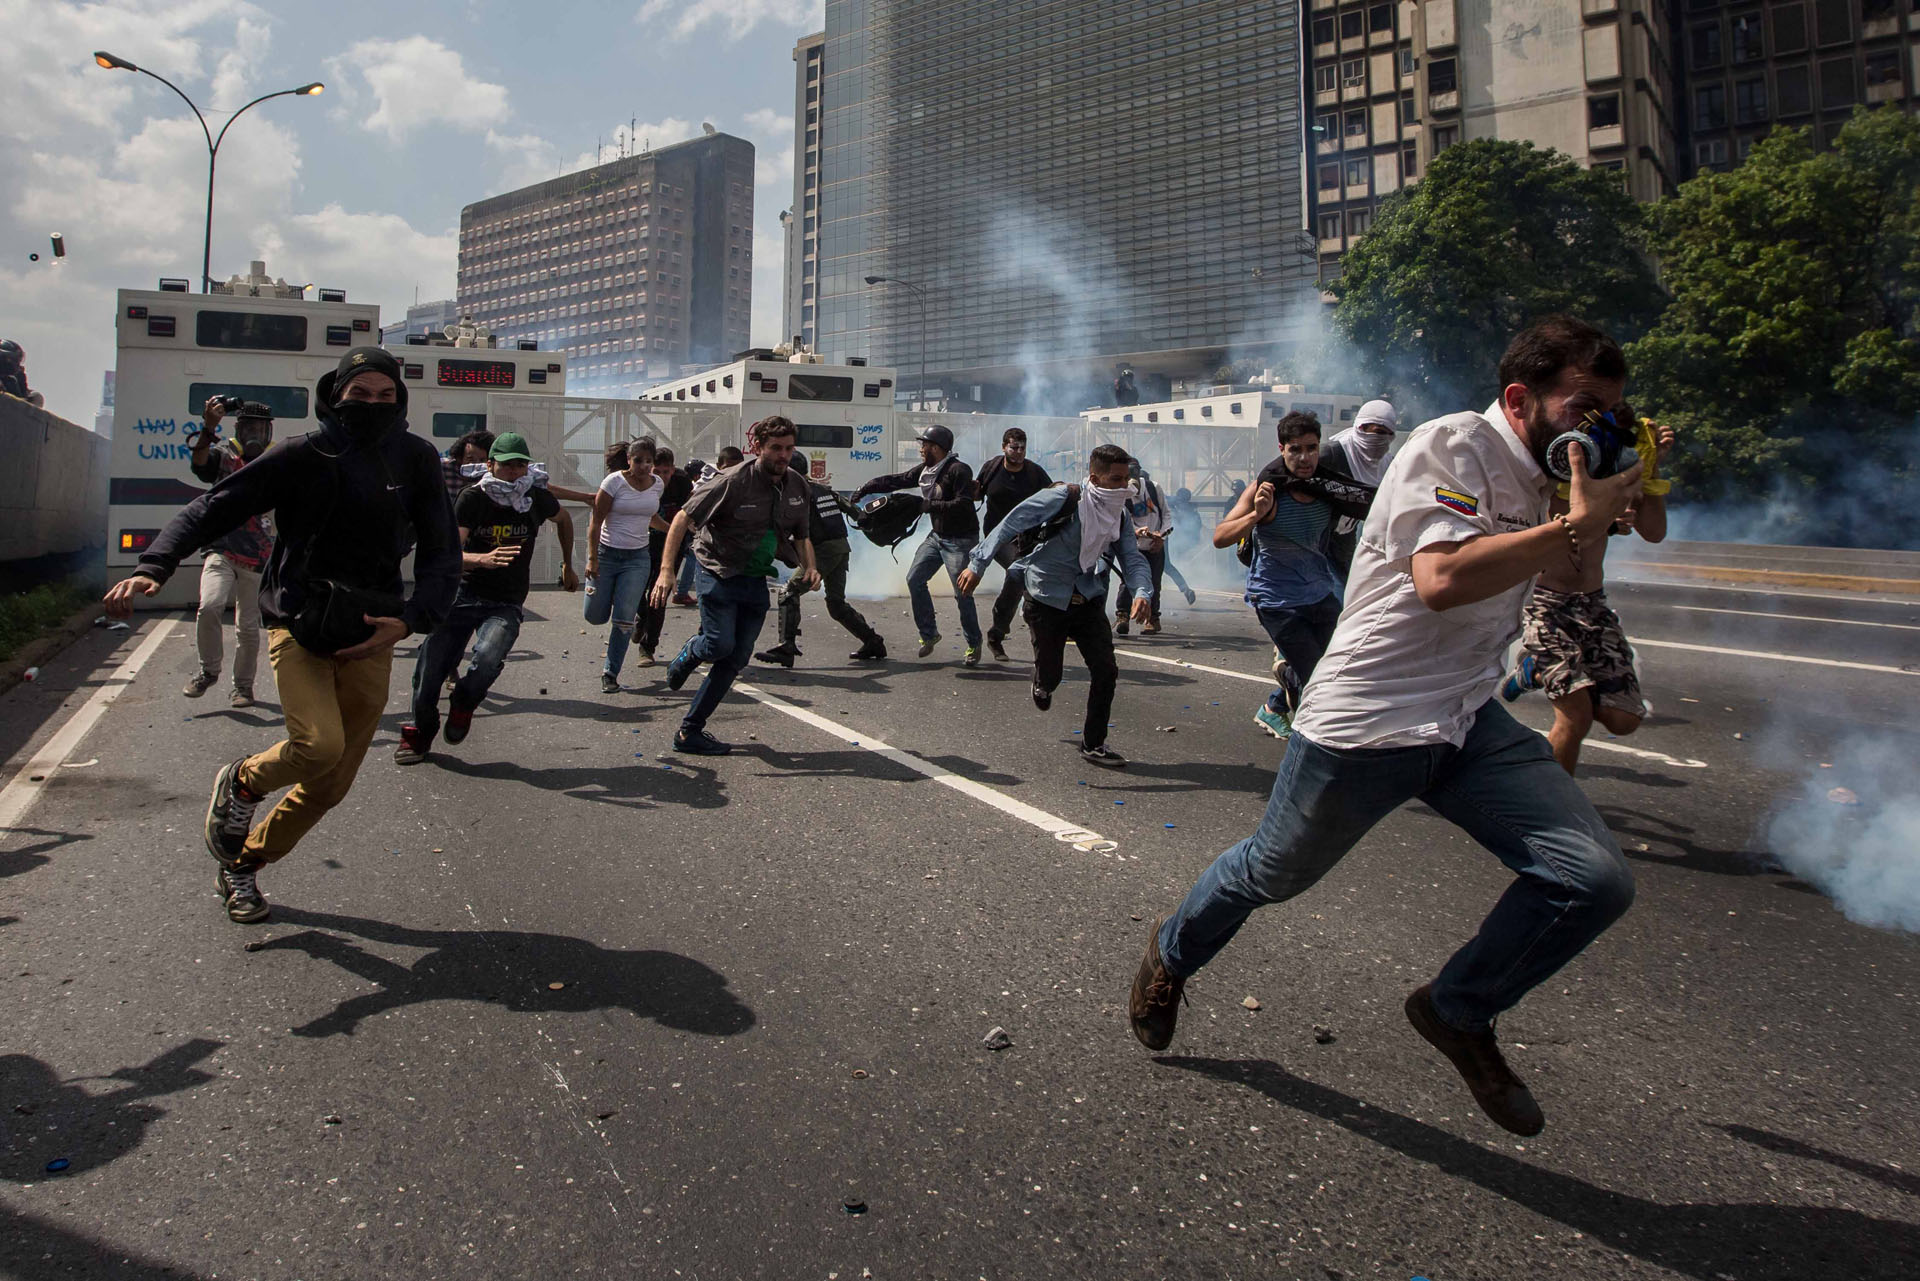 CAR01. CARACAS (VENEZUELA), 06/04/2017 - Un grupo de personas participa en una manifestación de opositores al gobierno de Nicolás Maduro hoy, jueves 6 de abril de 2017, en Caracas (Venezuela). Dos fotógrafos de la Agencia EFE en Caracas resultaron hoy heridos durante una protesta opositora en Caracas cuando agentes de los cuerpos de seguridad dispararon a quemarropa contra ellos mientras cubrían gráficamente la manifestación en el este de la capital venezolana. EFE/MIGUEL GUTIERREZ